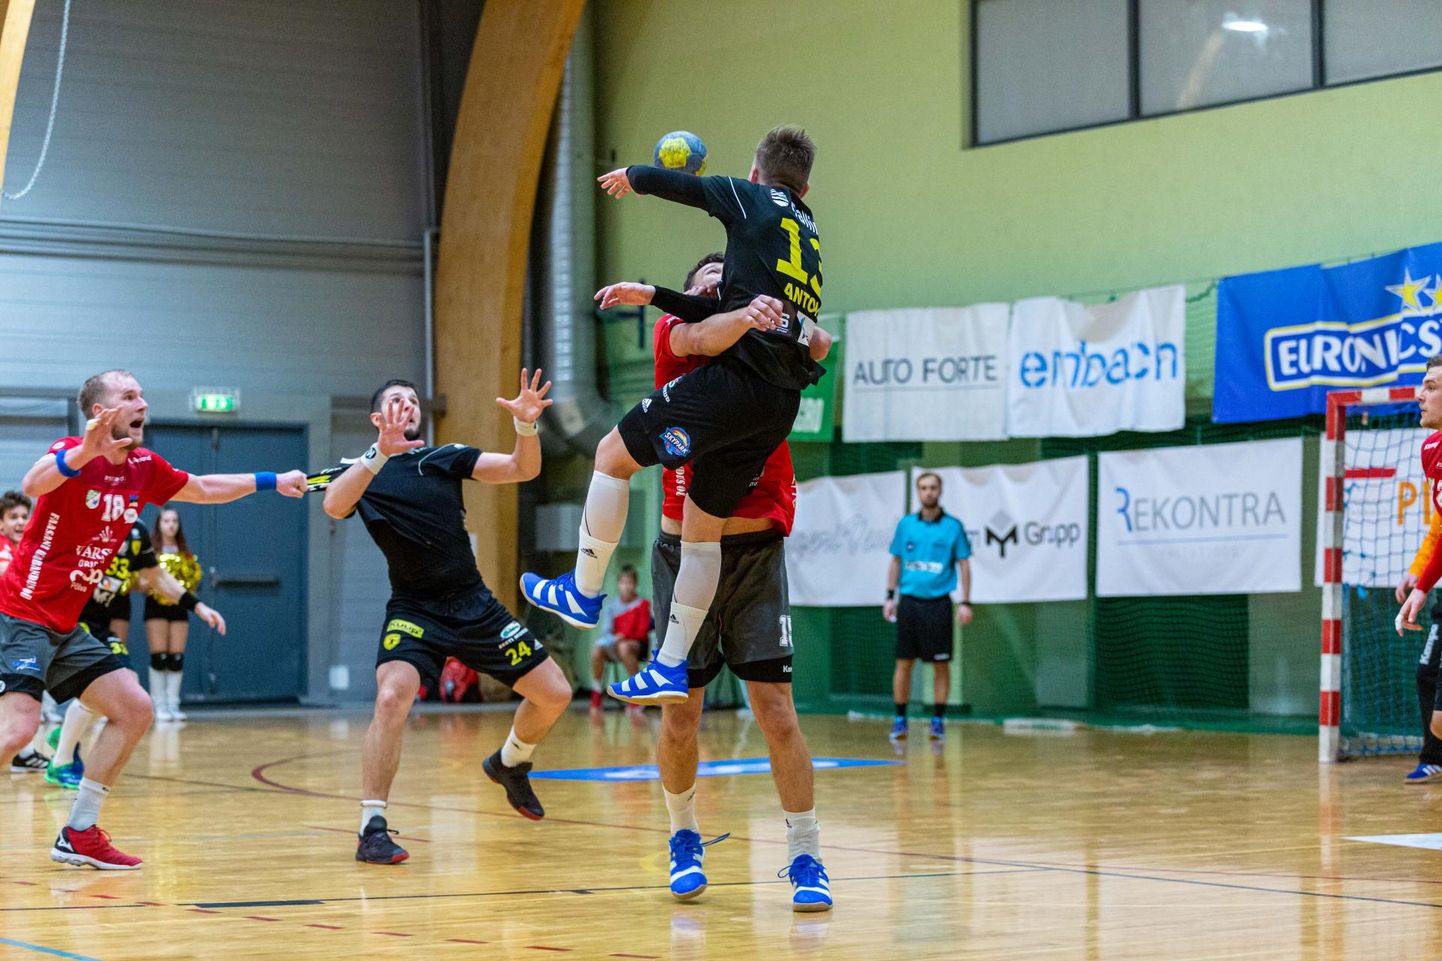 Põlva on muu hulgas tuntud tugeva käsipallikantsina. Hiljuti õnnestus Serviti meeskonnal koduses Mesikäpa hallis võita ka Eesti käsipallikarikas.

 